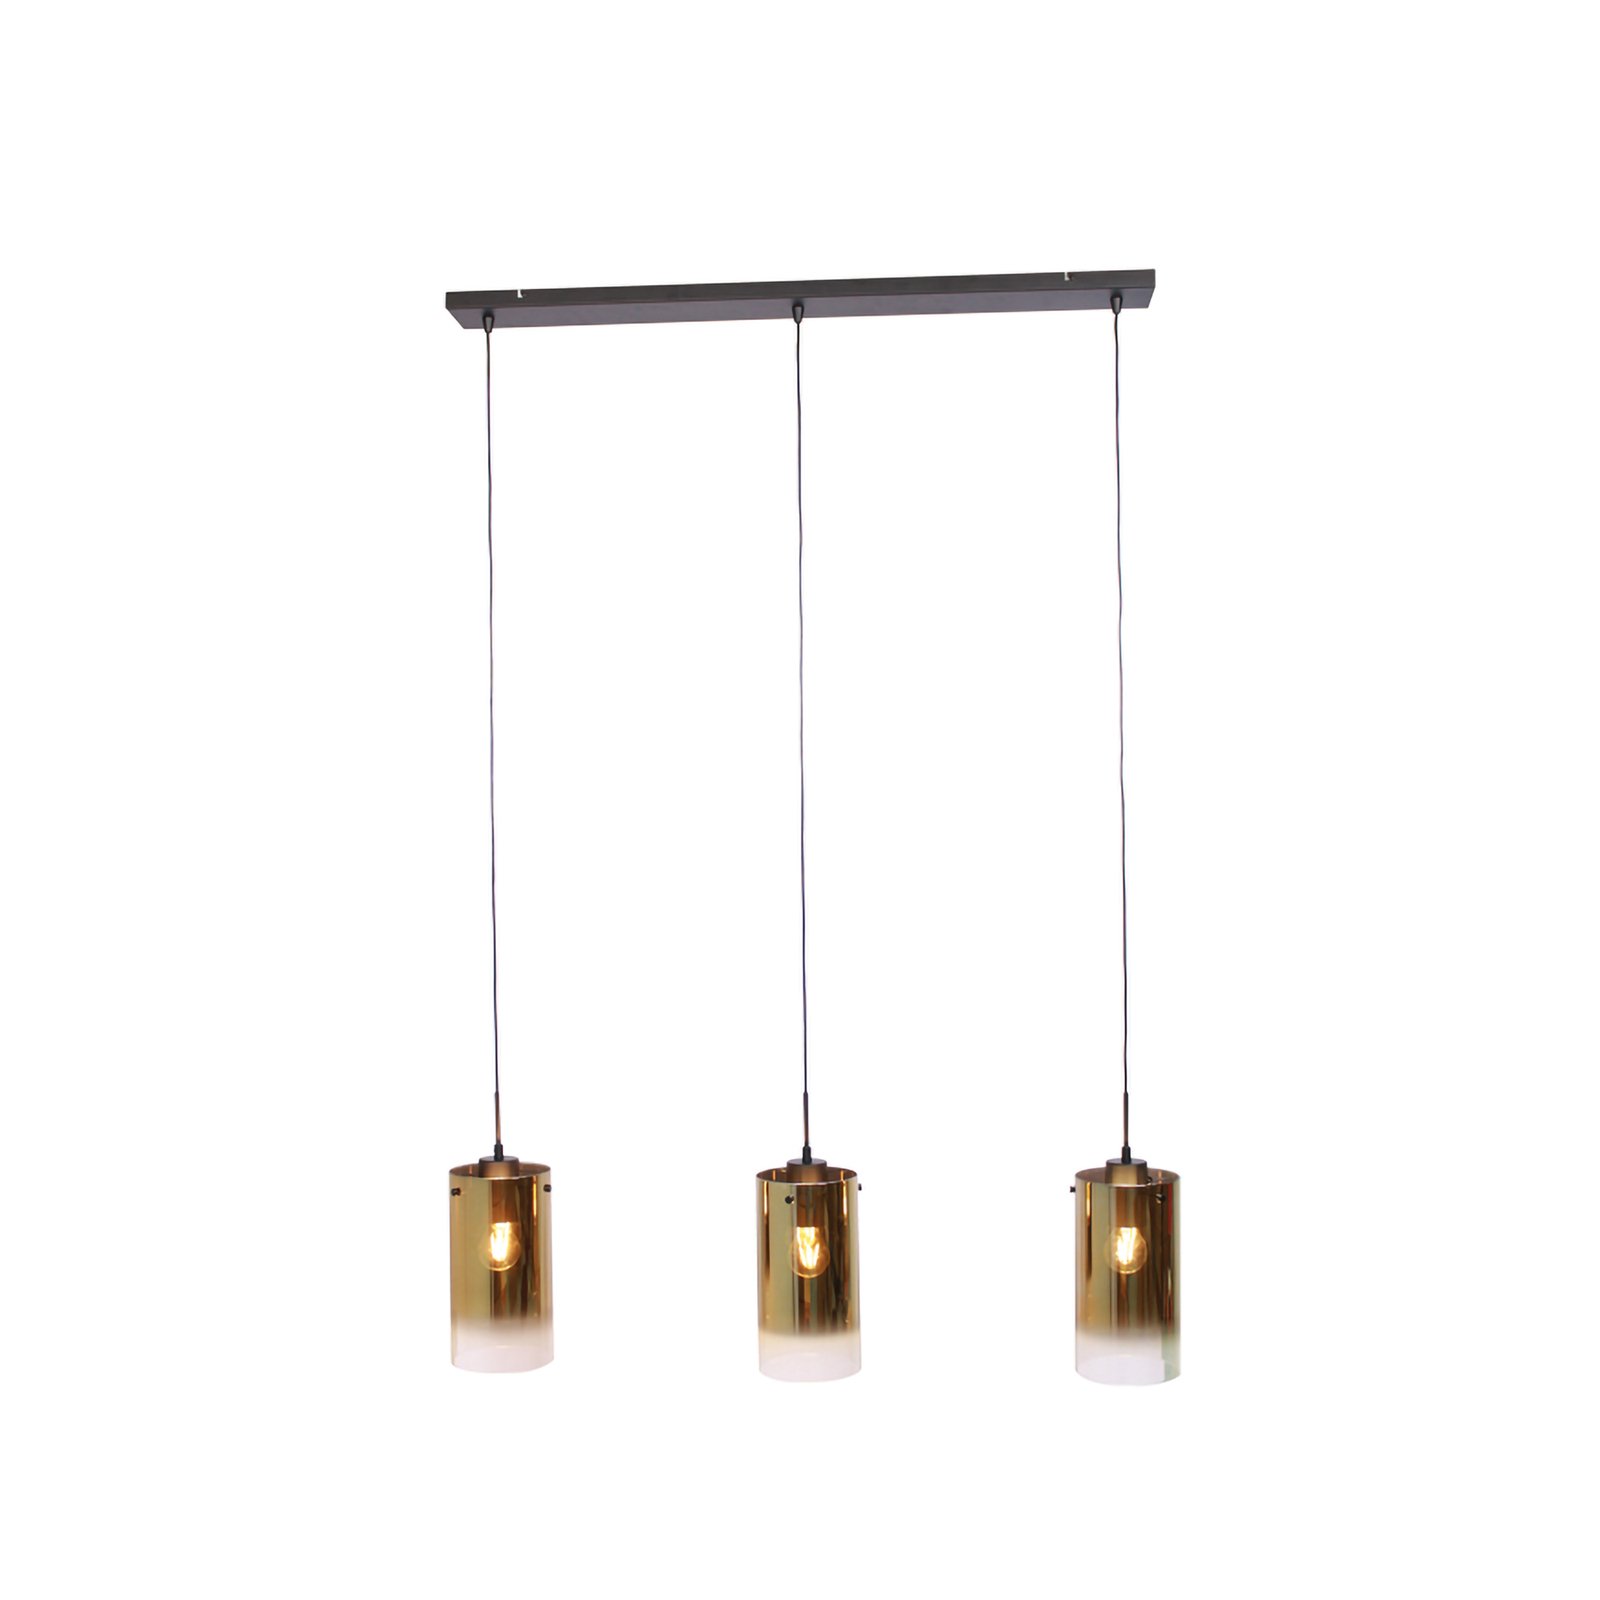 Ventotto hängande lampa, svart/guld, längd 105 cm, 3-ljus glas